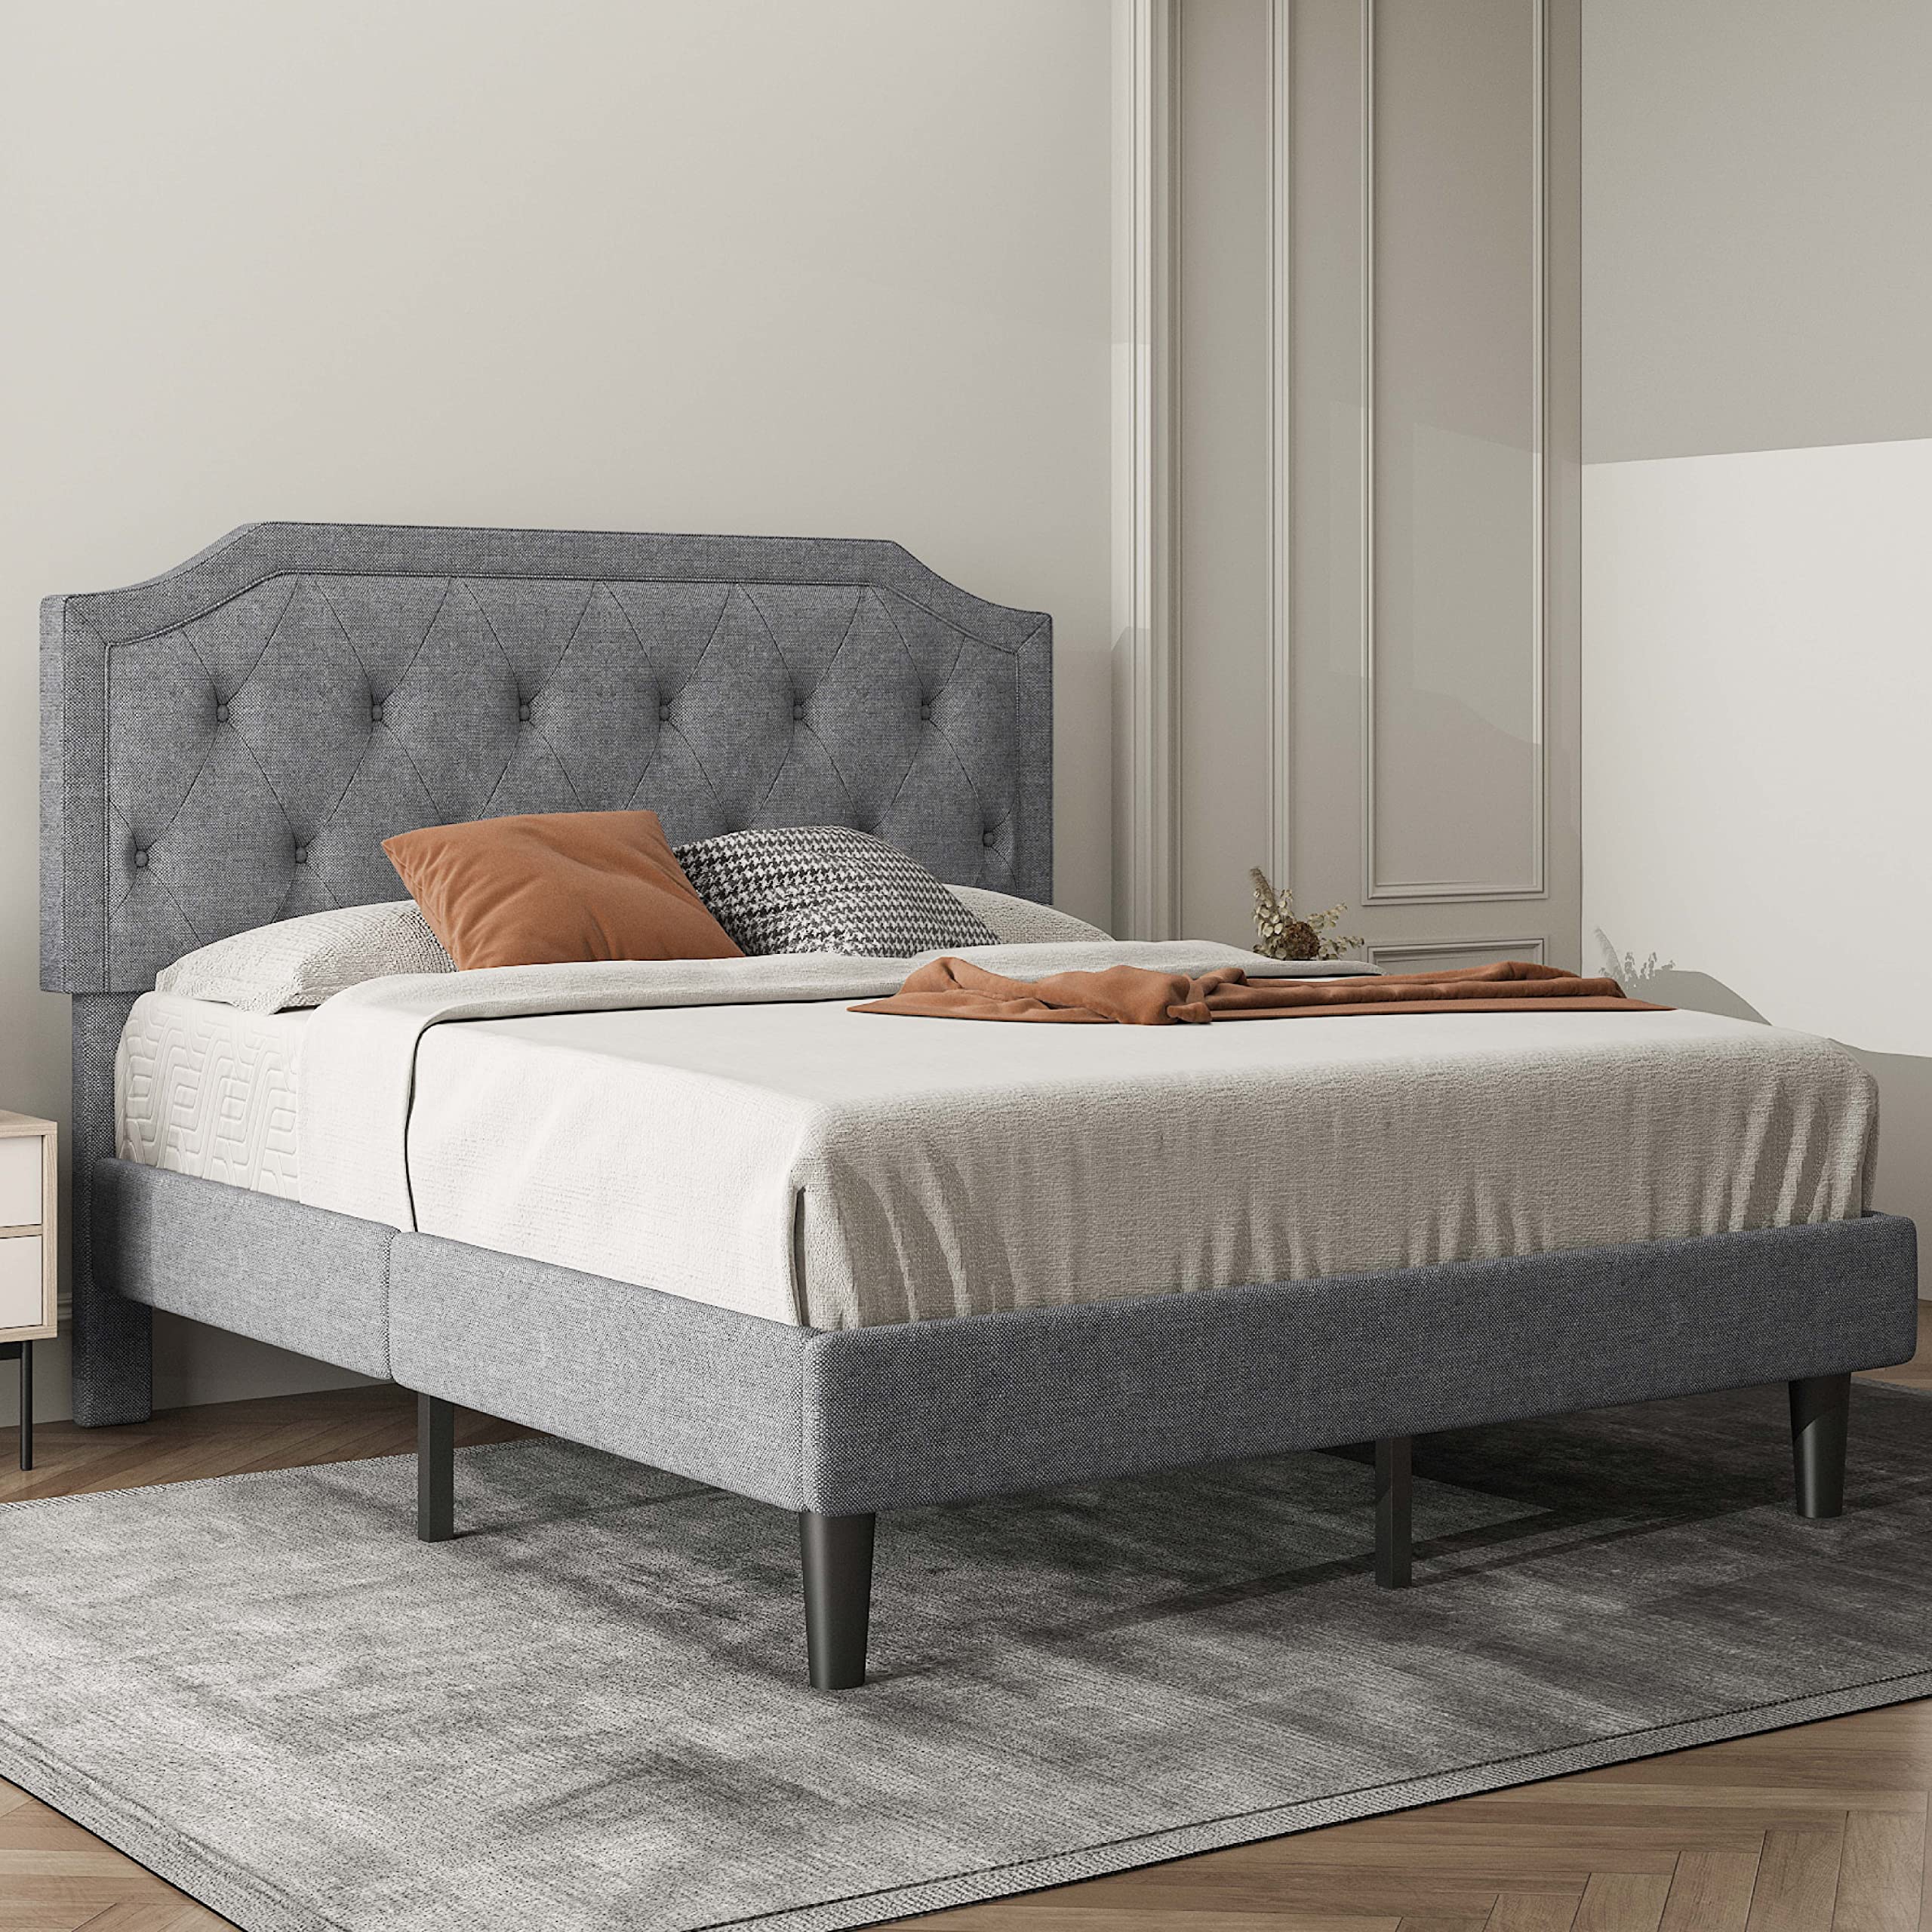 Upholstered Queen Size Platform Bed Frame with Adjustable and Curved Corner Design